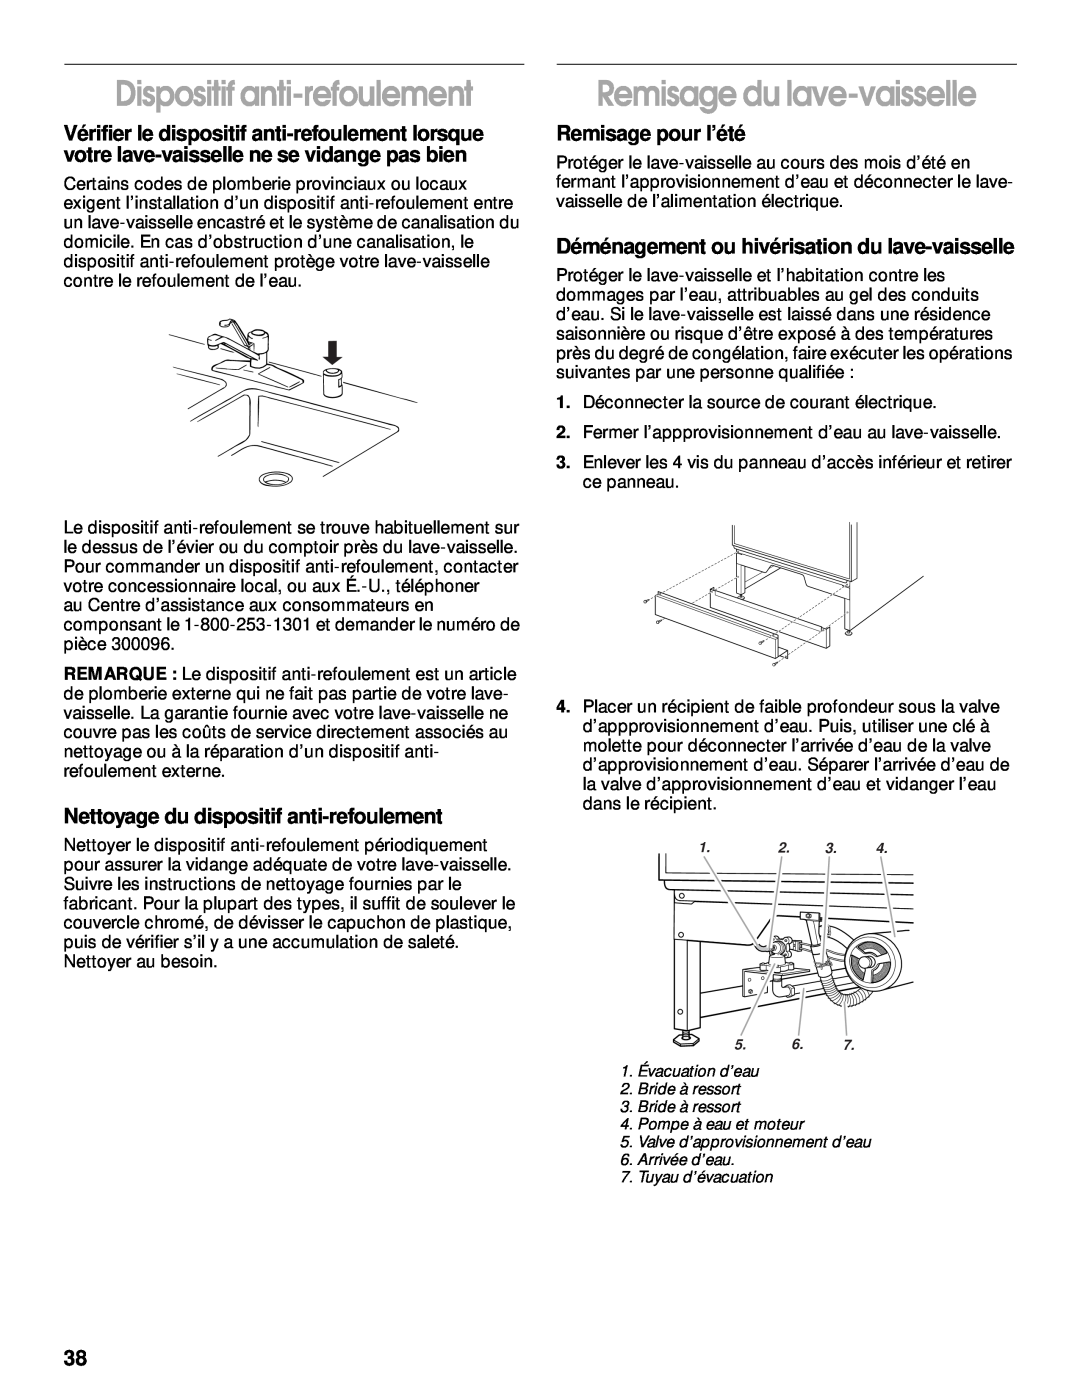 Whirlpool TUD5700 manual Dispositif anti-refoulement, Remisage du lave-vaisselle, Nettoyage du dispositif anti-refoulement 